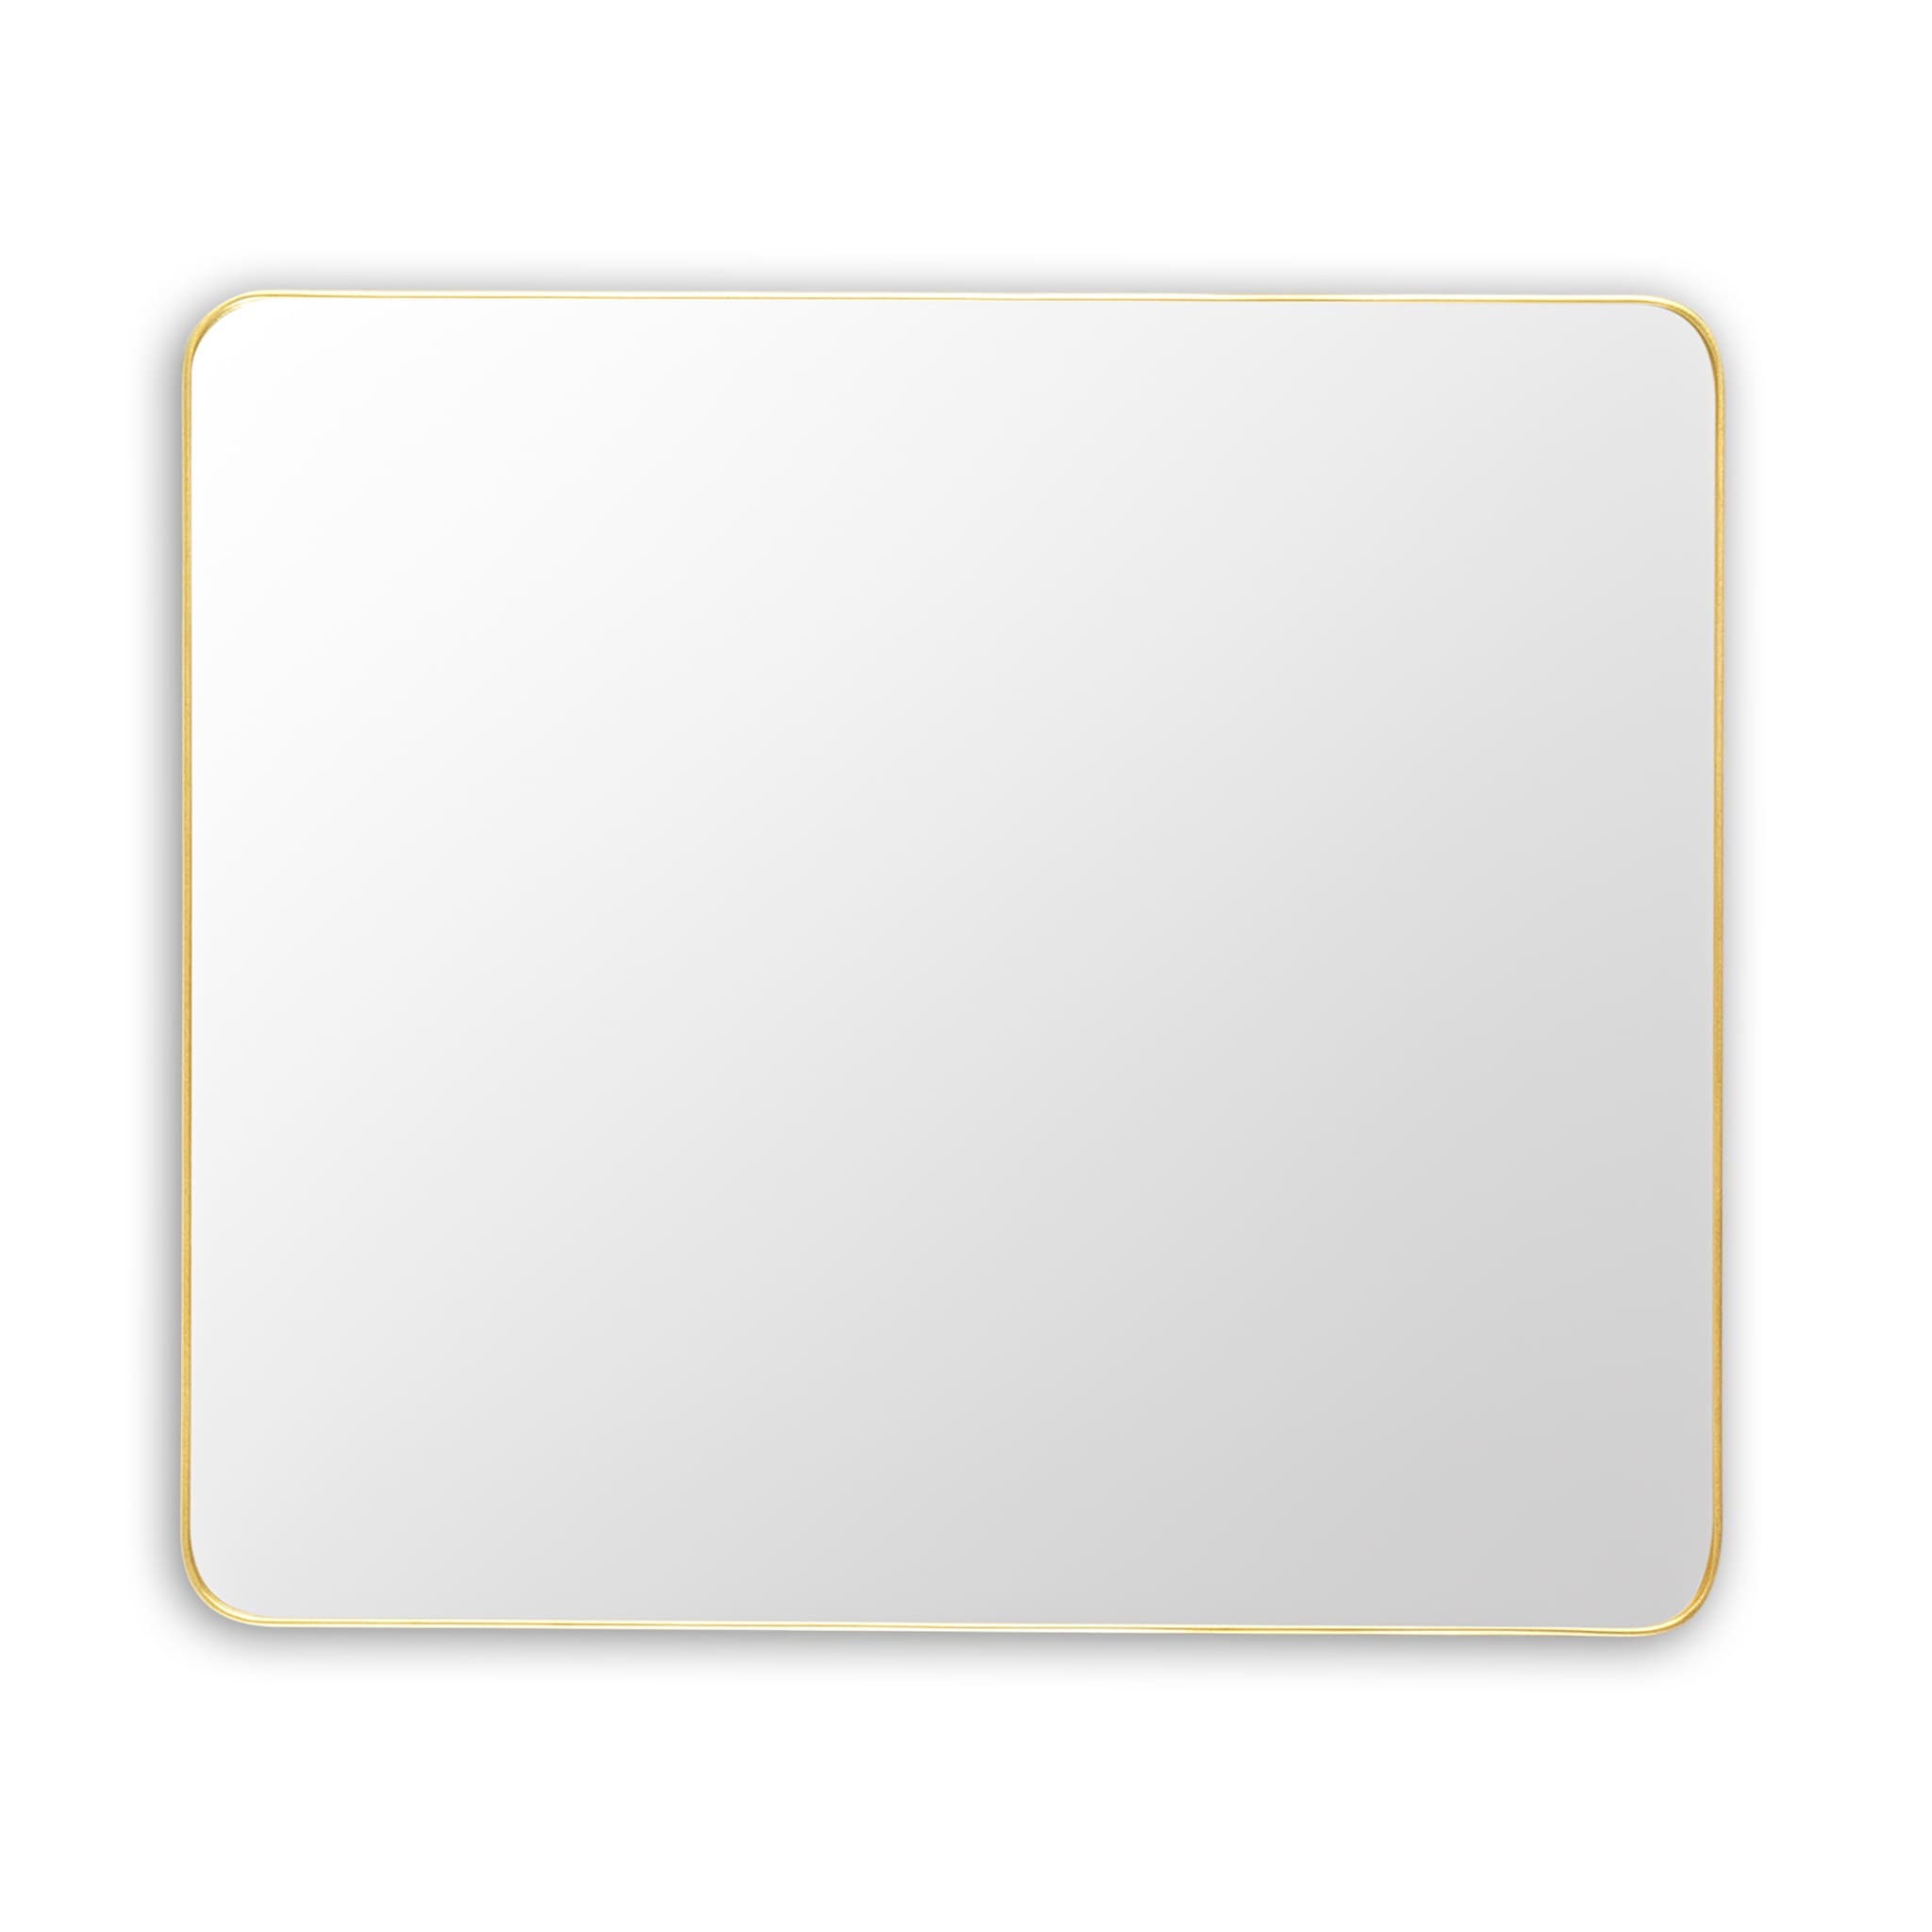  Bathroom Rectangular Mirror Homelero 30"  #size_30"  #color_gold